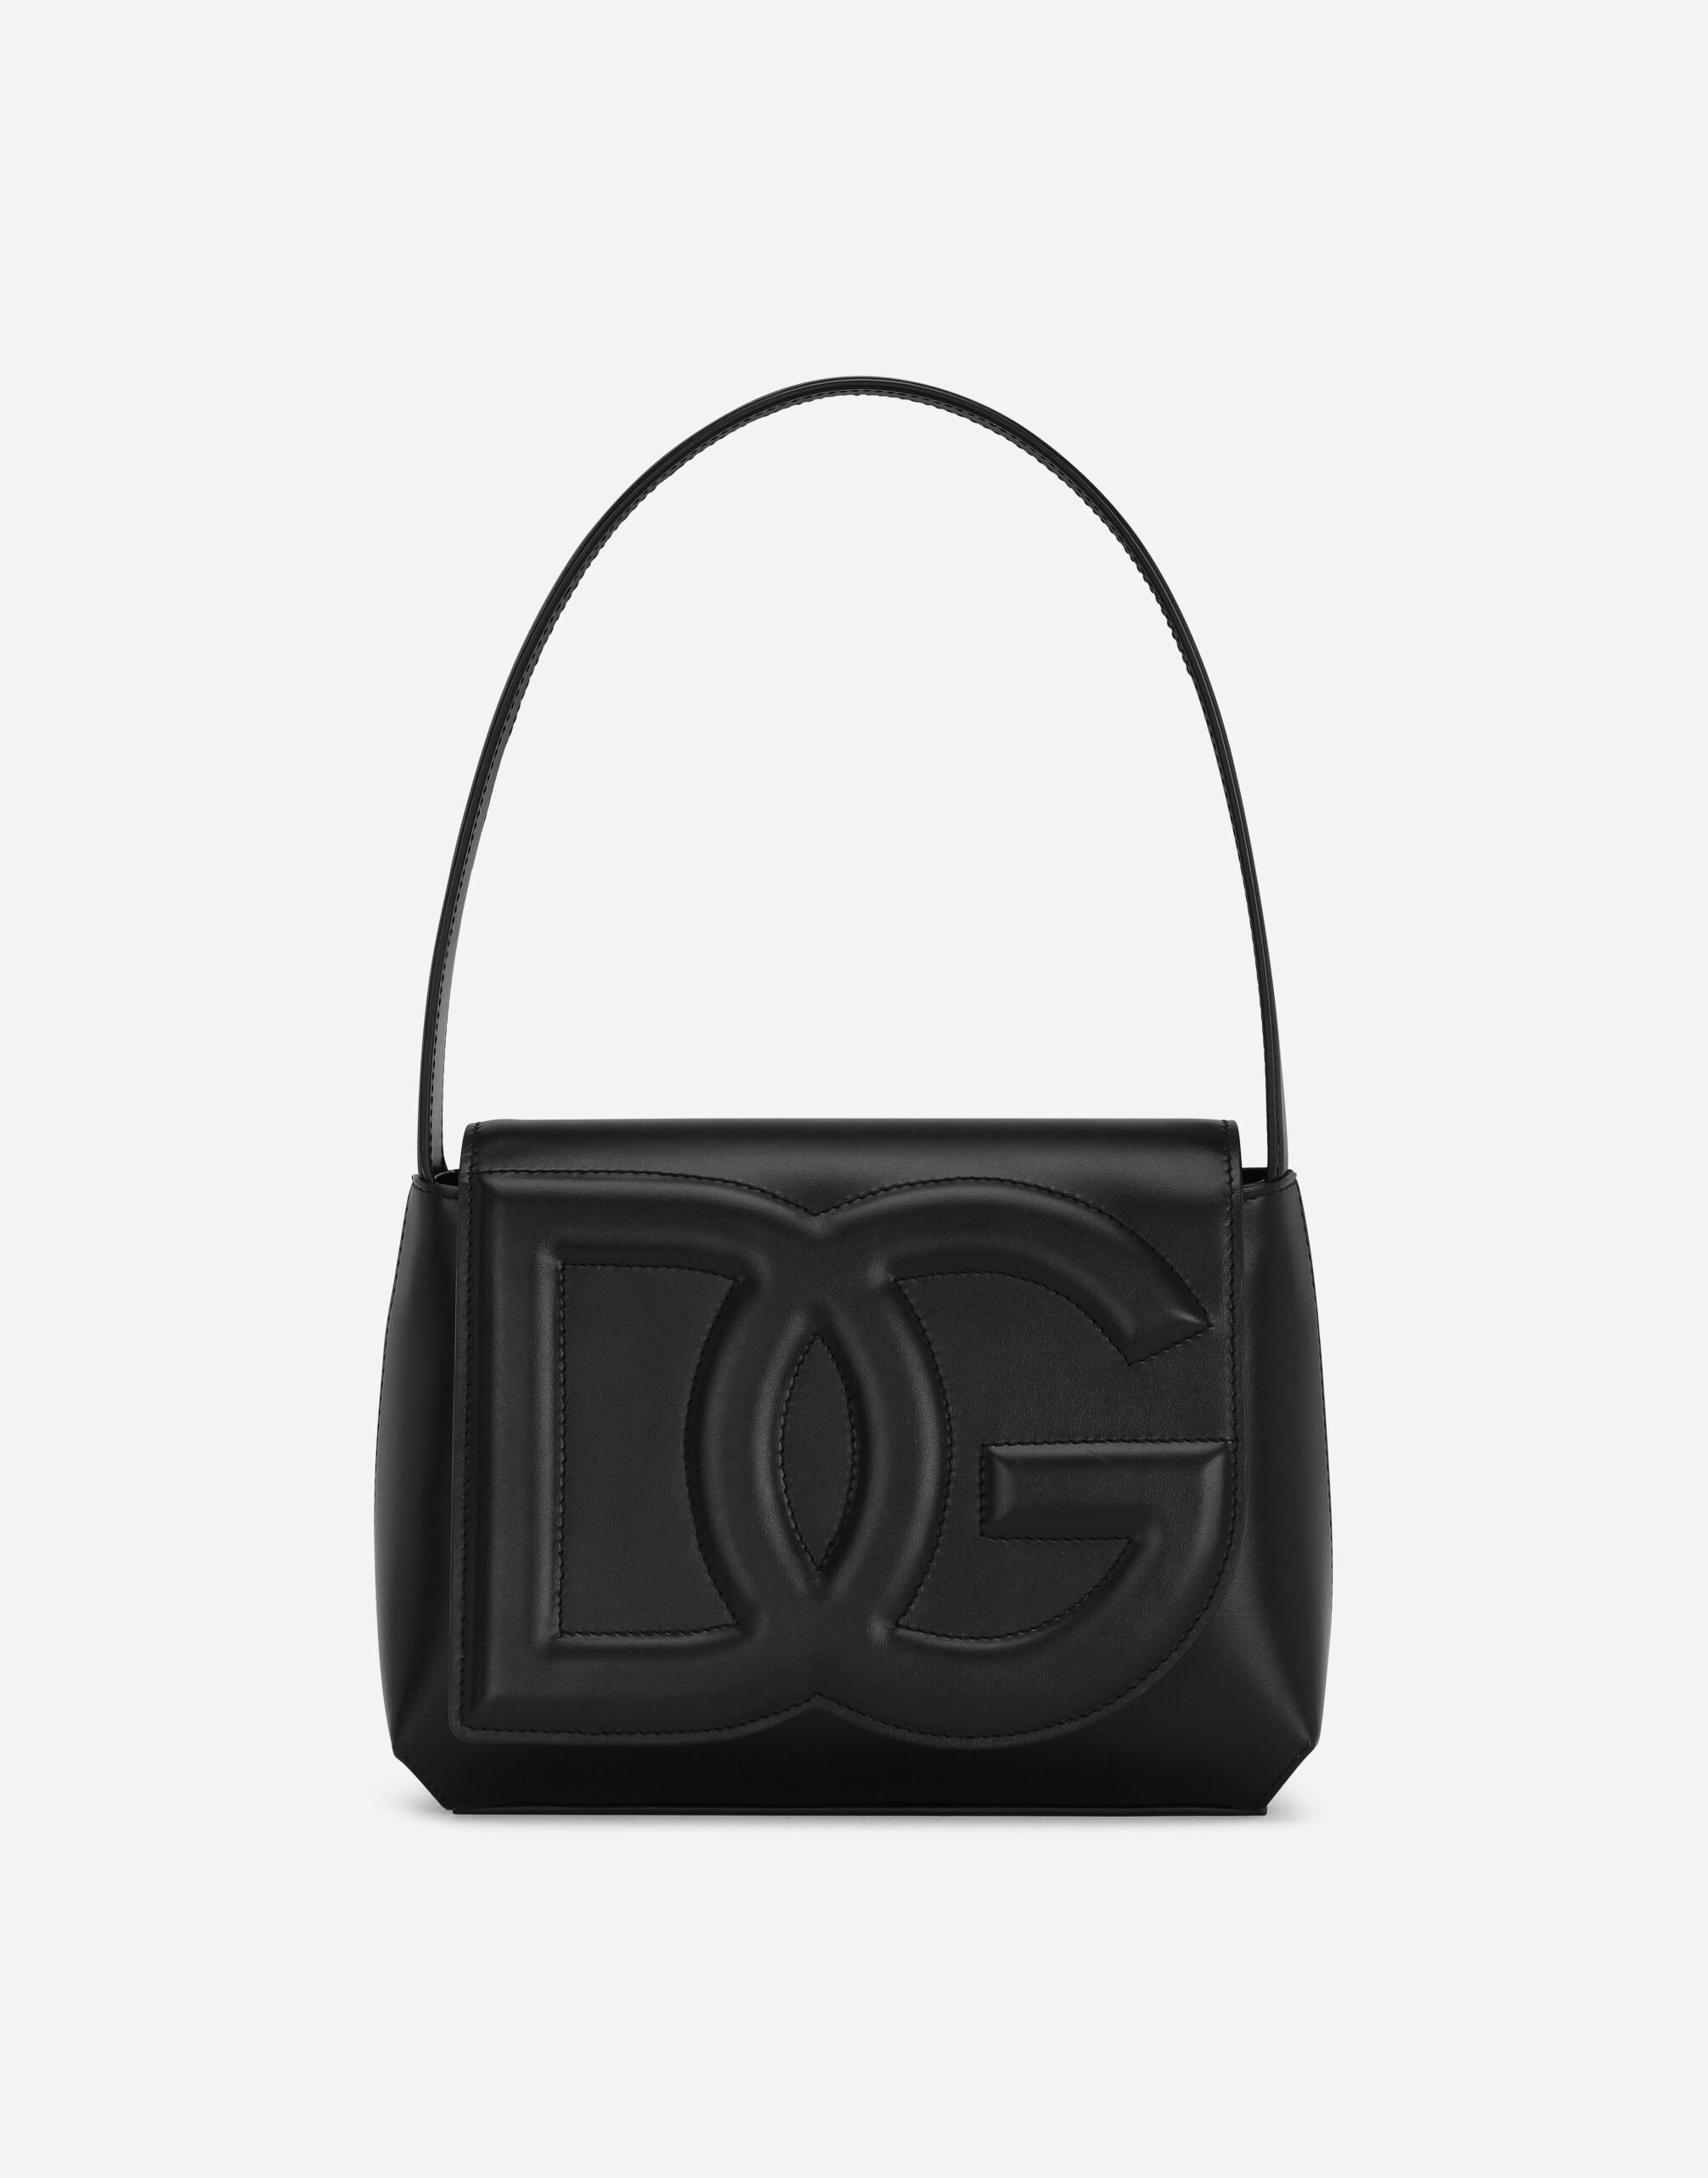 Dolce & Gabbana DG Logo Bag shoulder bag Black BB7100AW437